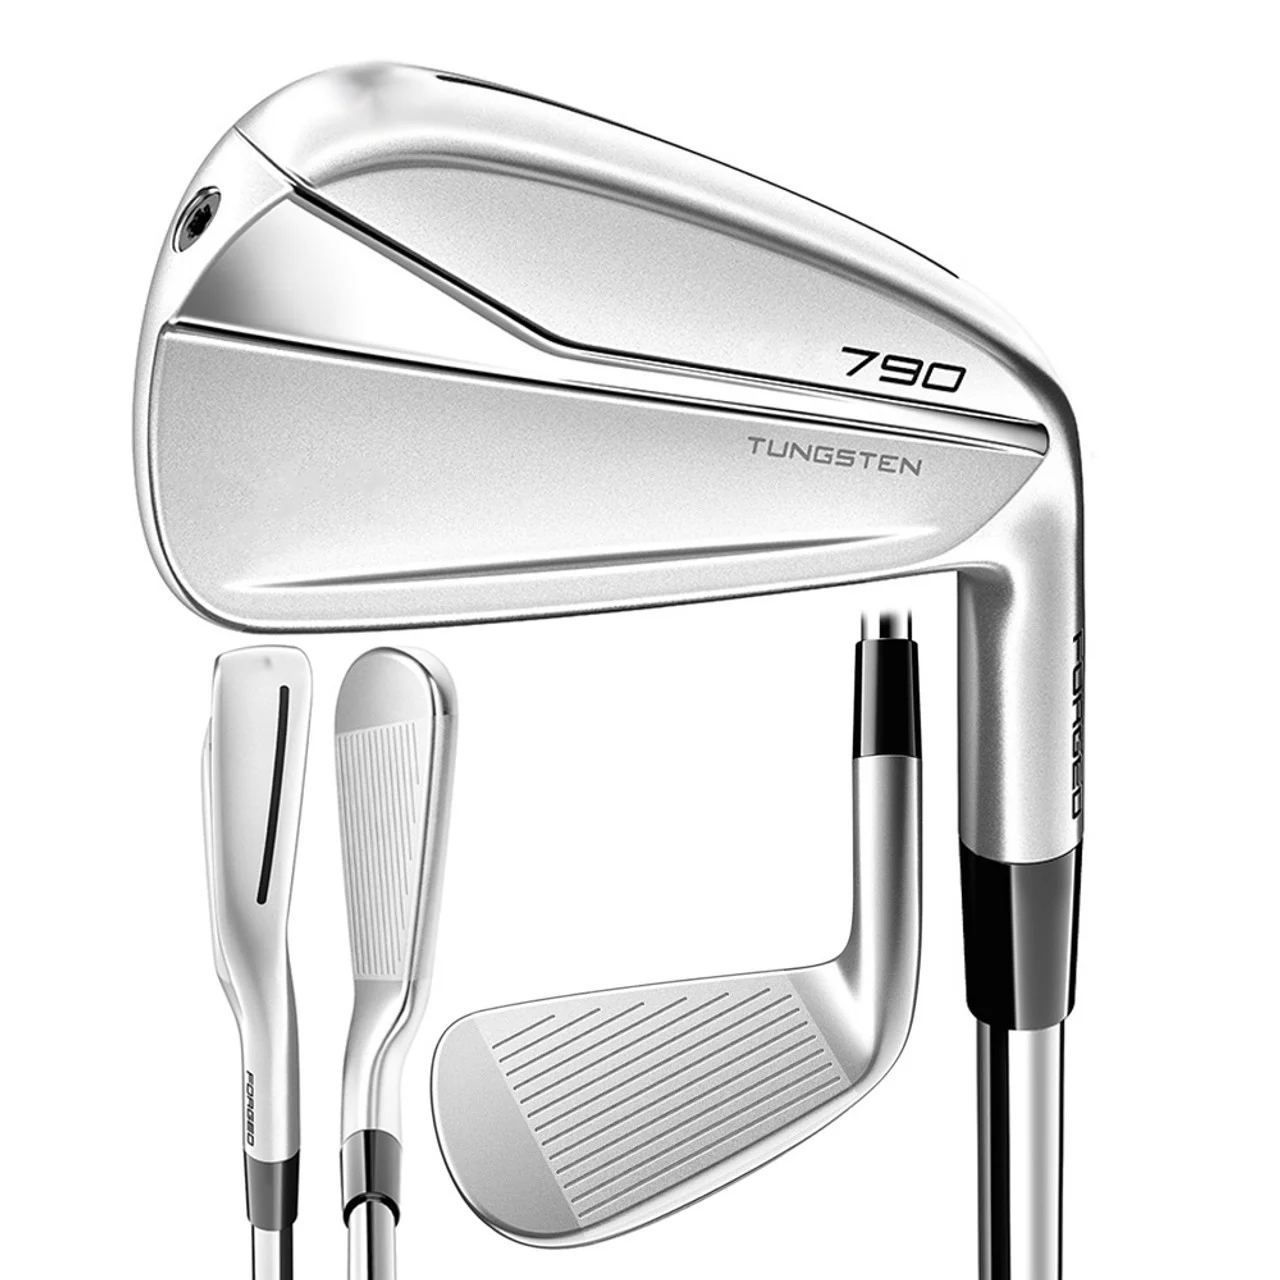 

TM Golf Iron NEW P790 Golf Clubs Iron Set Forged Tungsten Regular/Stiff Steel/Graphite Shaft